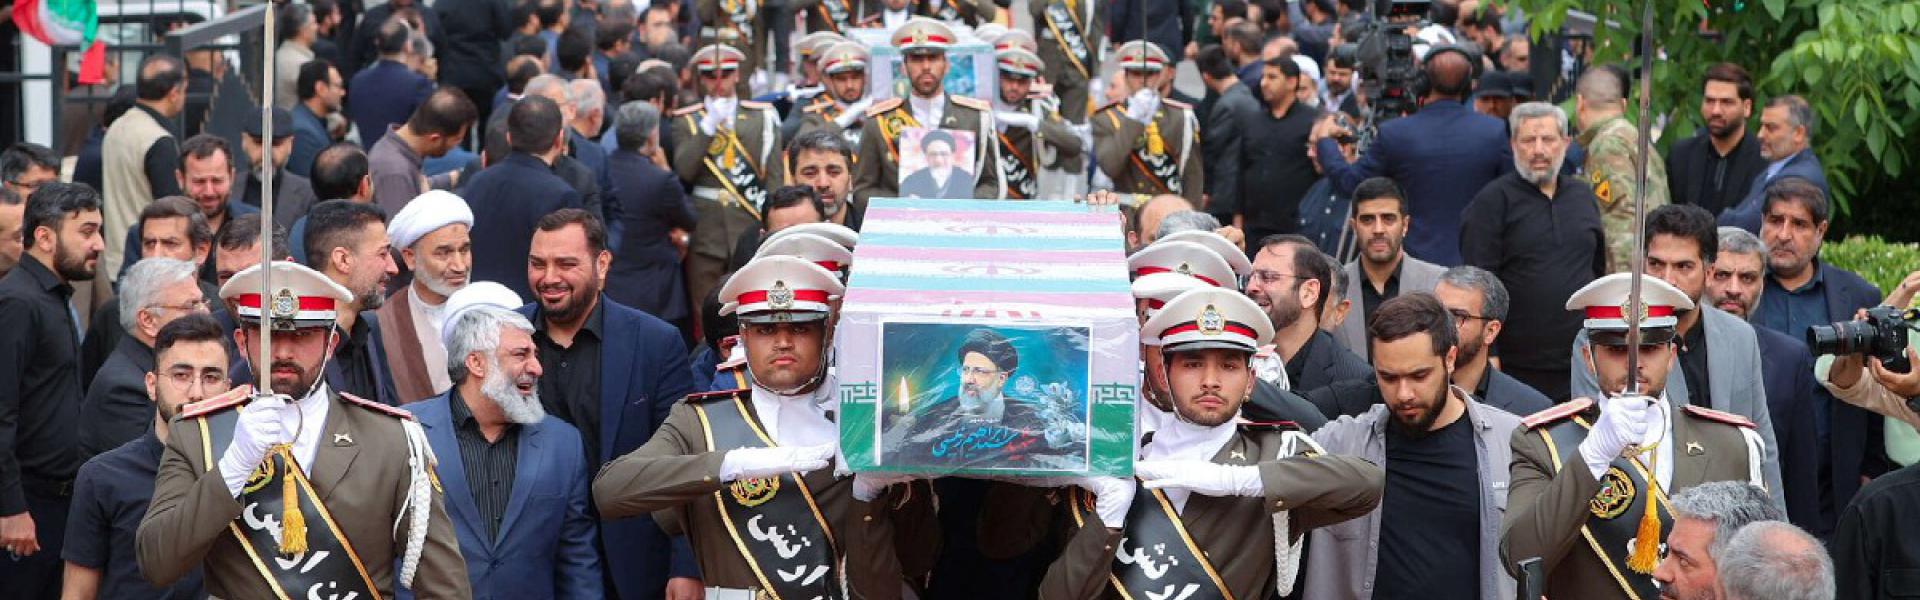 تباين شديد في حالة الحزن الشعبي مقارنة بجنازات سابقة لشخصيات إيرانية بارزة  